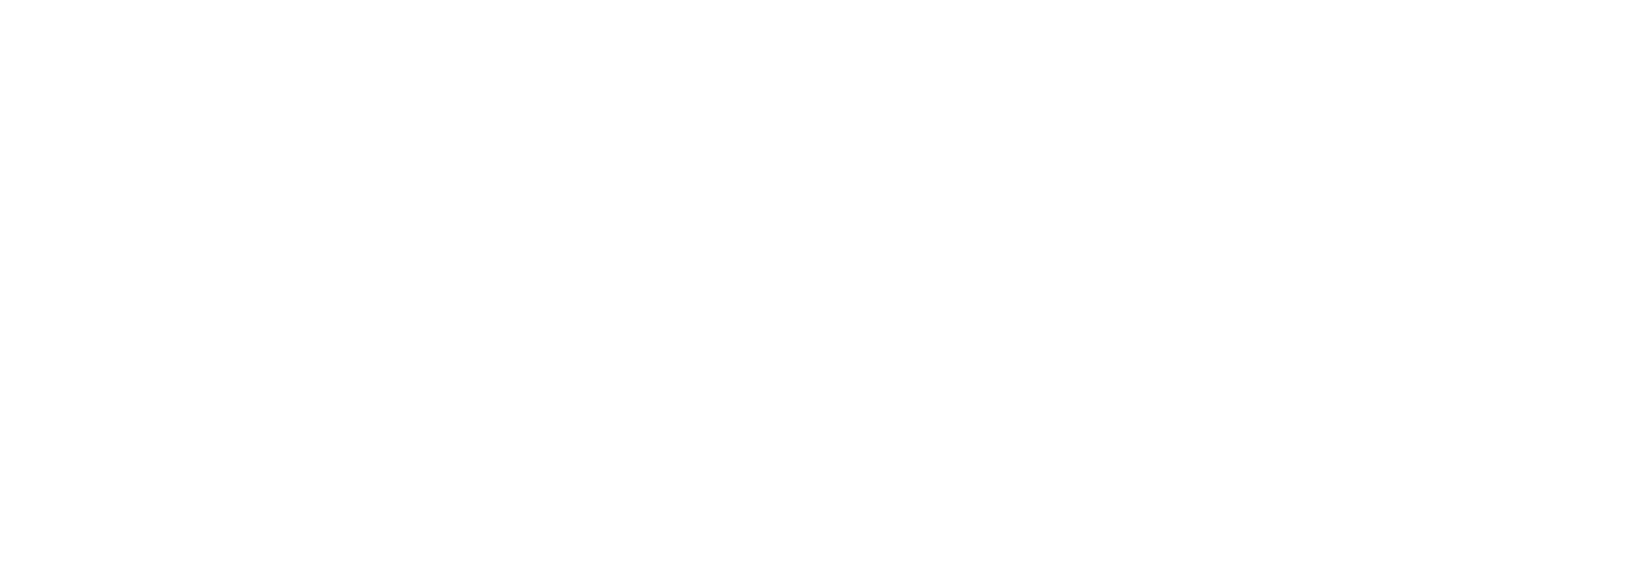 Janus International Group logo large for dark backgrounds (transparent PNG)